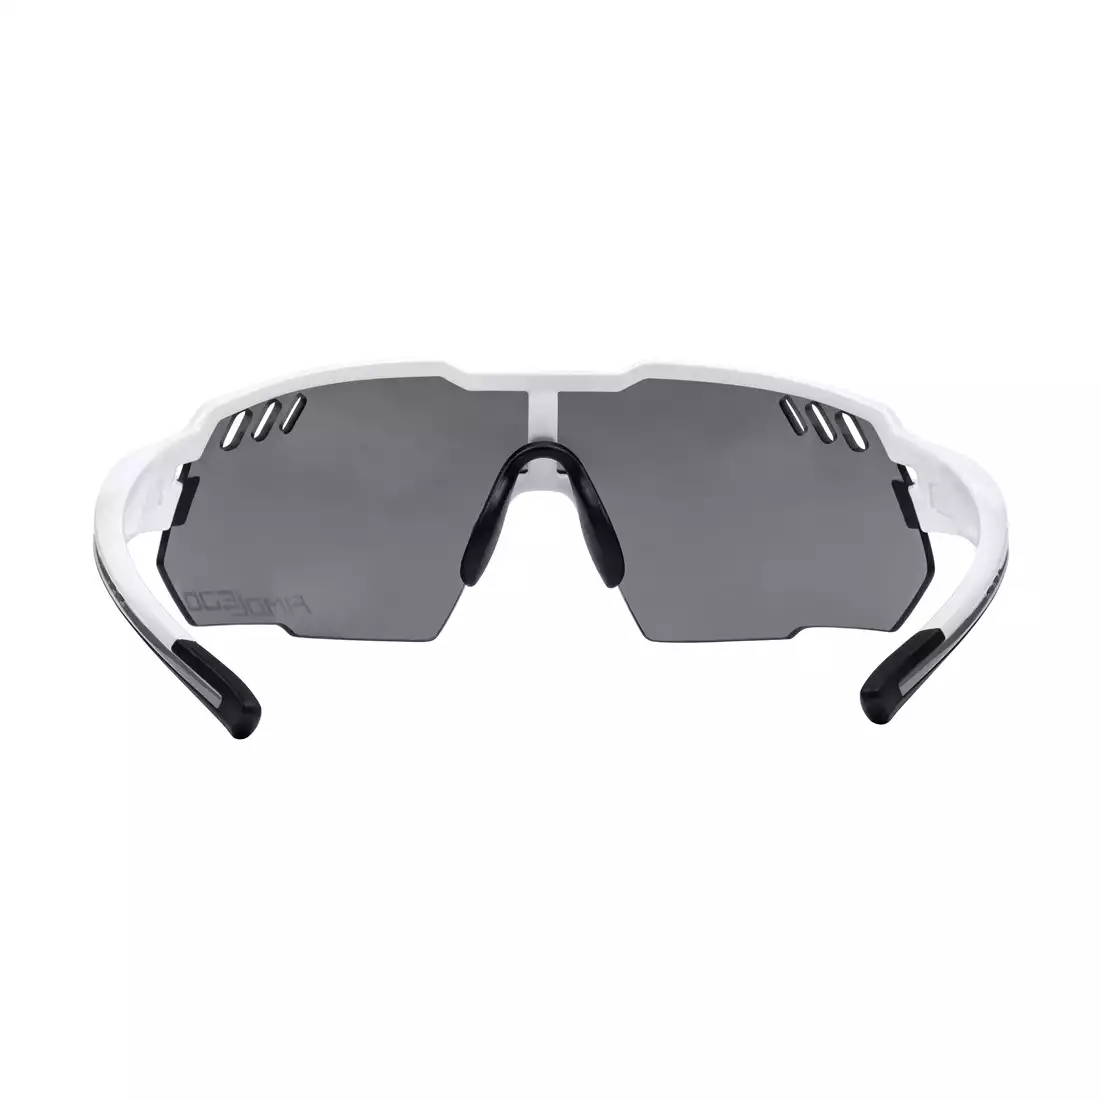 FORCE okulary sportowe AMOLEDO, biało-szare 910871